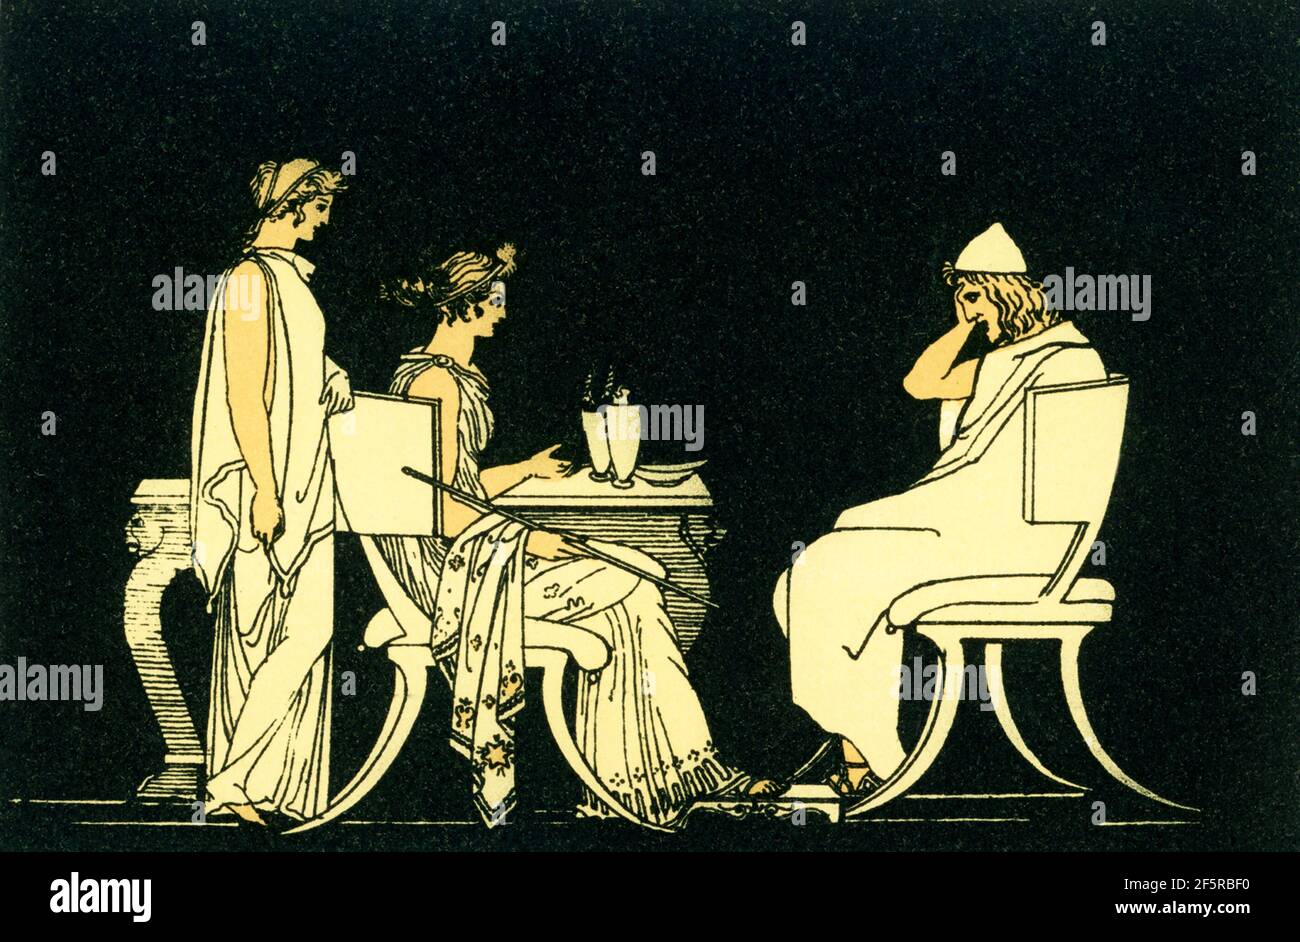 Questa illustrazione del 1880 accompagnò un libro su Omero e le sue epiche, l'Iliade e l'Odissea. Mostra la scena con l'eroe greco Odysseus (Ulisse) alla tavola di Circe. Secondo l'antica mitologia greca, Circe era una nota incanto. Figlia di Helios, cambiò i compagni di Odysseo in porco. Odysseus fece rompere il incantesimo al Circe. Foto Stock